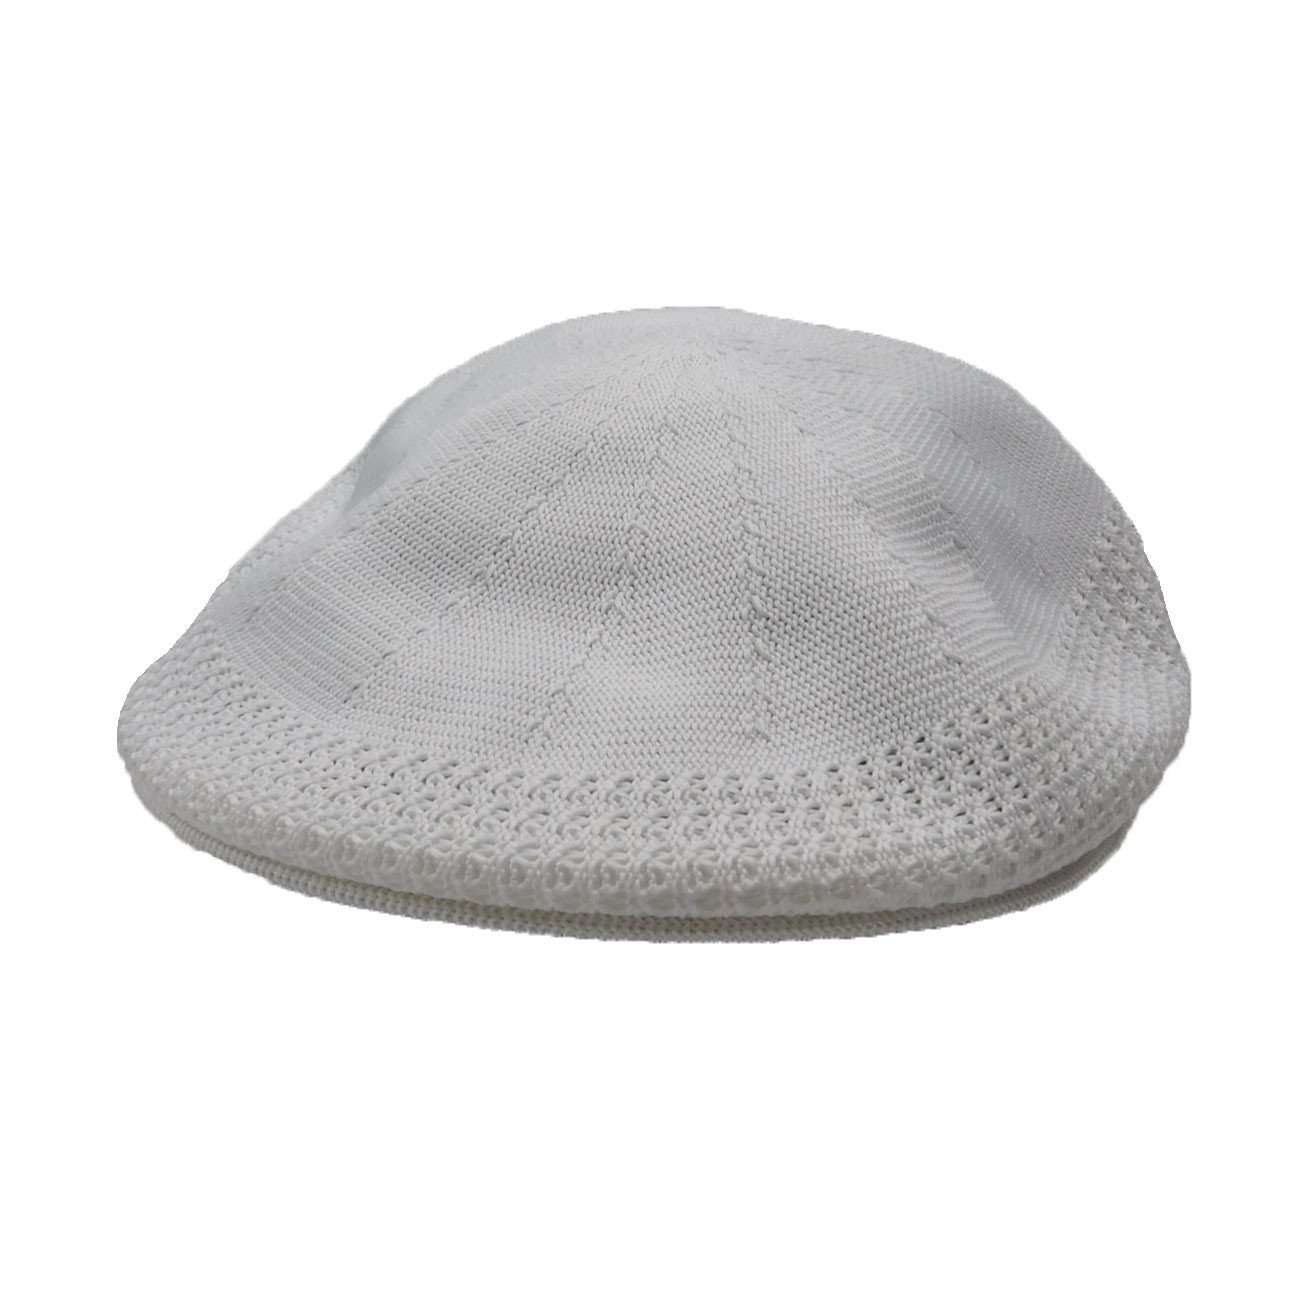 Poly Knit Ascot Ca- - Milani Hats Flat Cap Milani Hats MSd214WHM White S/M 